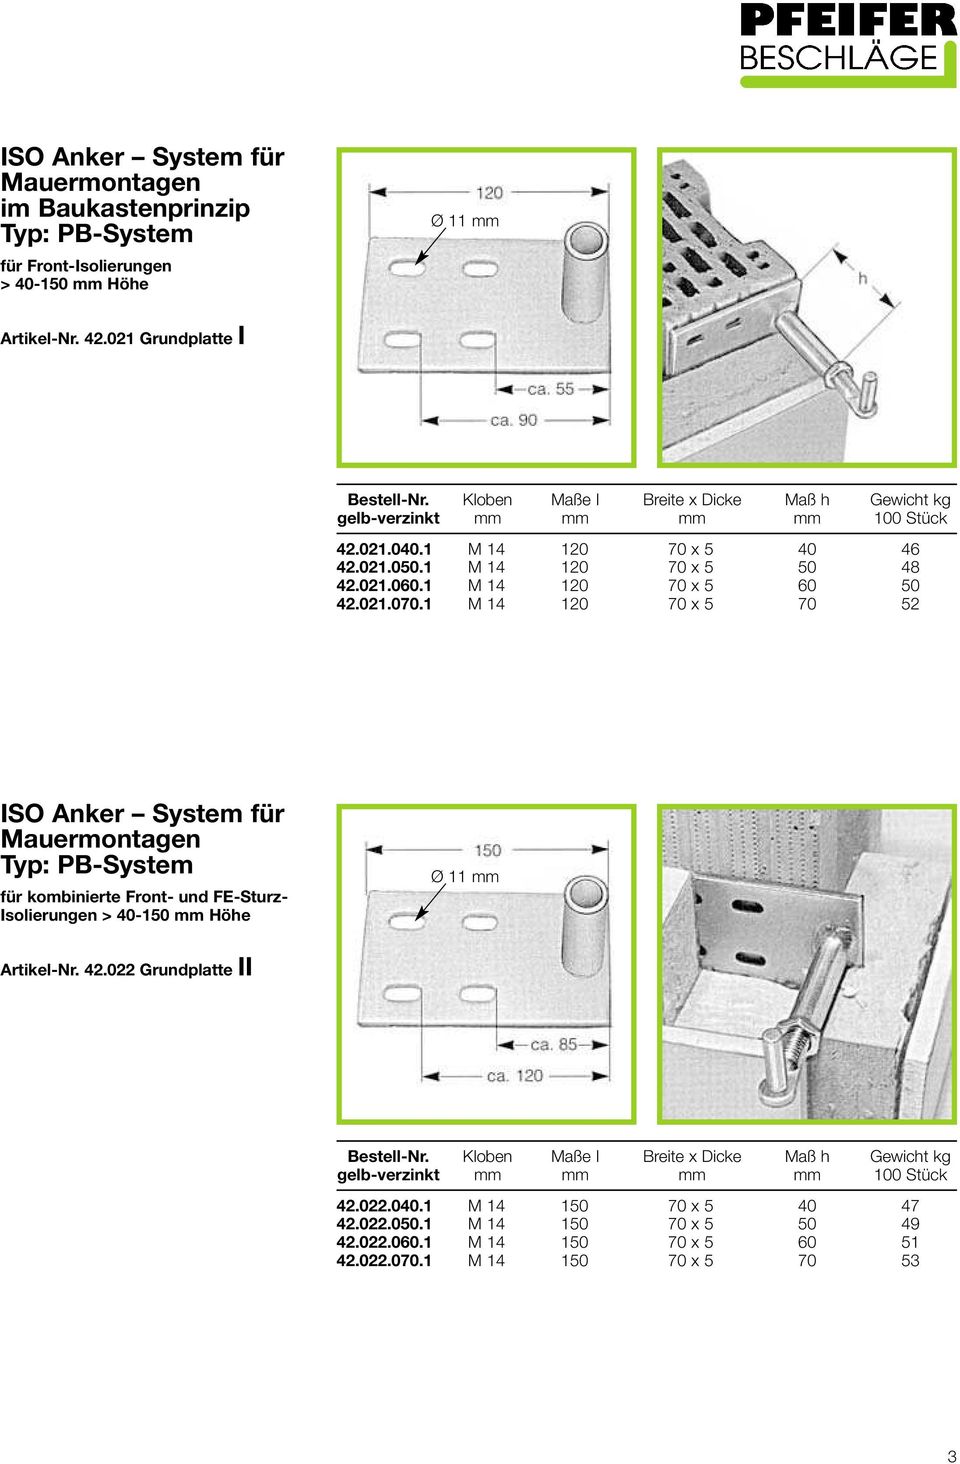 021.070.1 M 14 120 70 x 5 70 52 ISO Anker System für Mauermontagen Typ: PB-System für kombinierte Front- und FE-Sturz- Isolierungen > 40-150 Höhe Ø 11 Artikel-Nr.